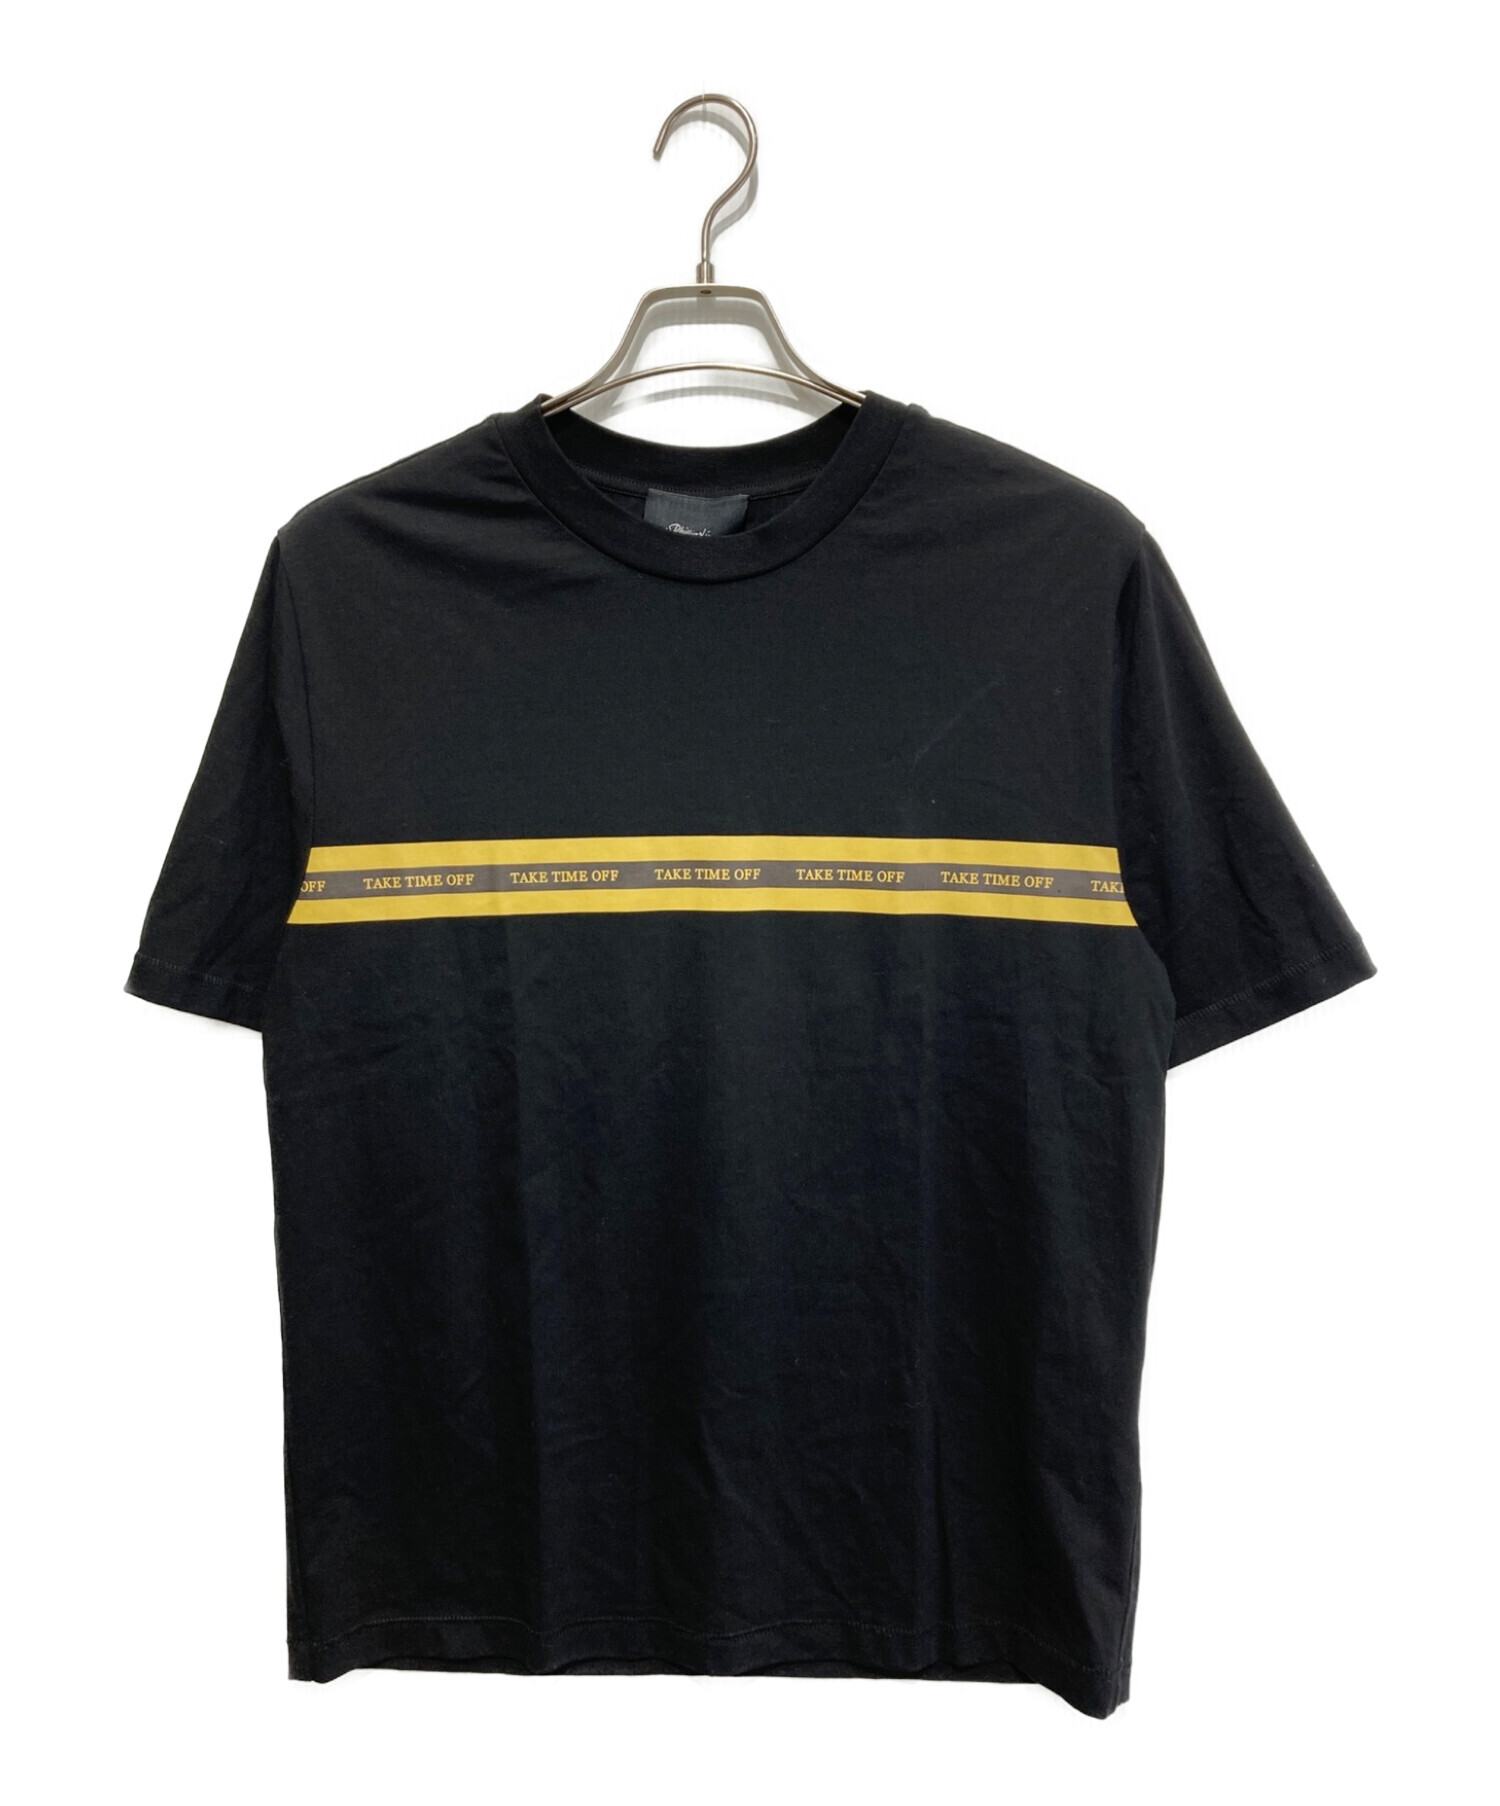 3.1 phillip lim (スリーワンフィリップリム) Time Off T-Shirt ブラック サイズ:XS